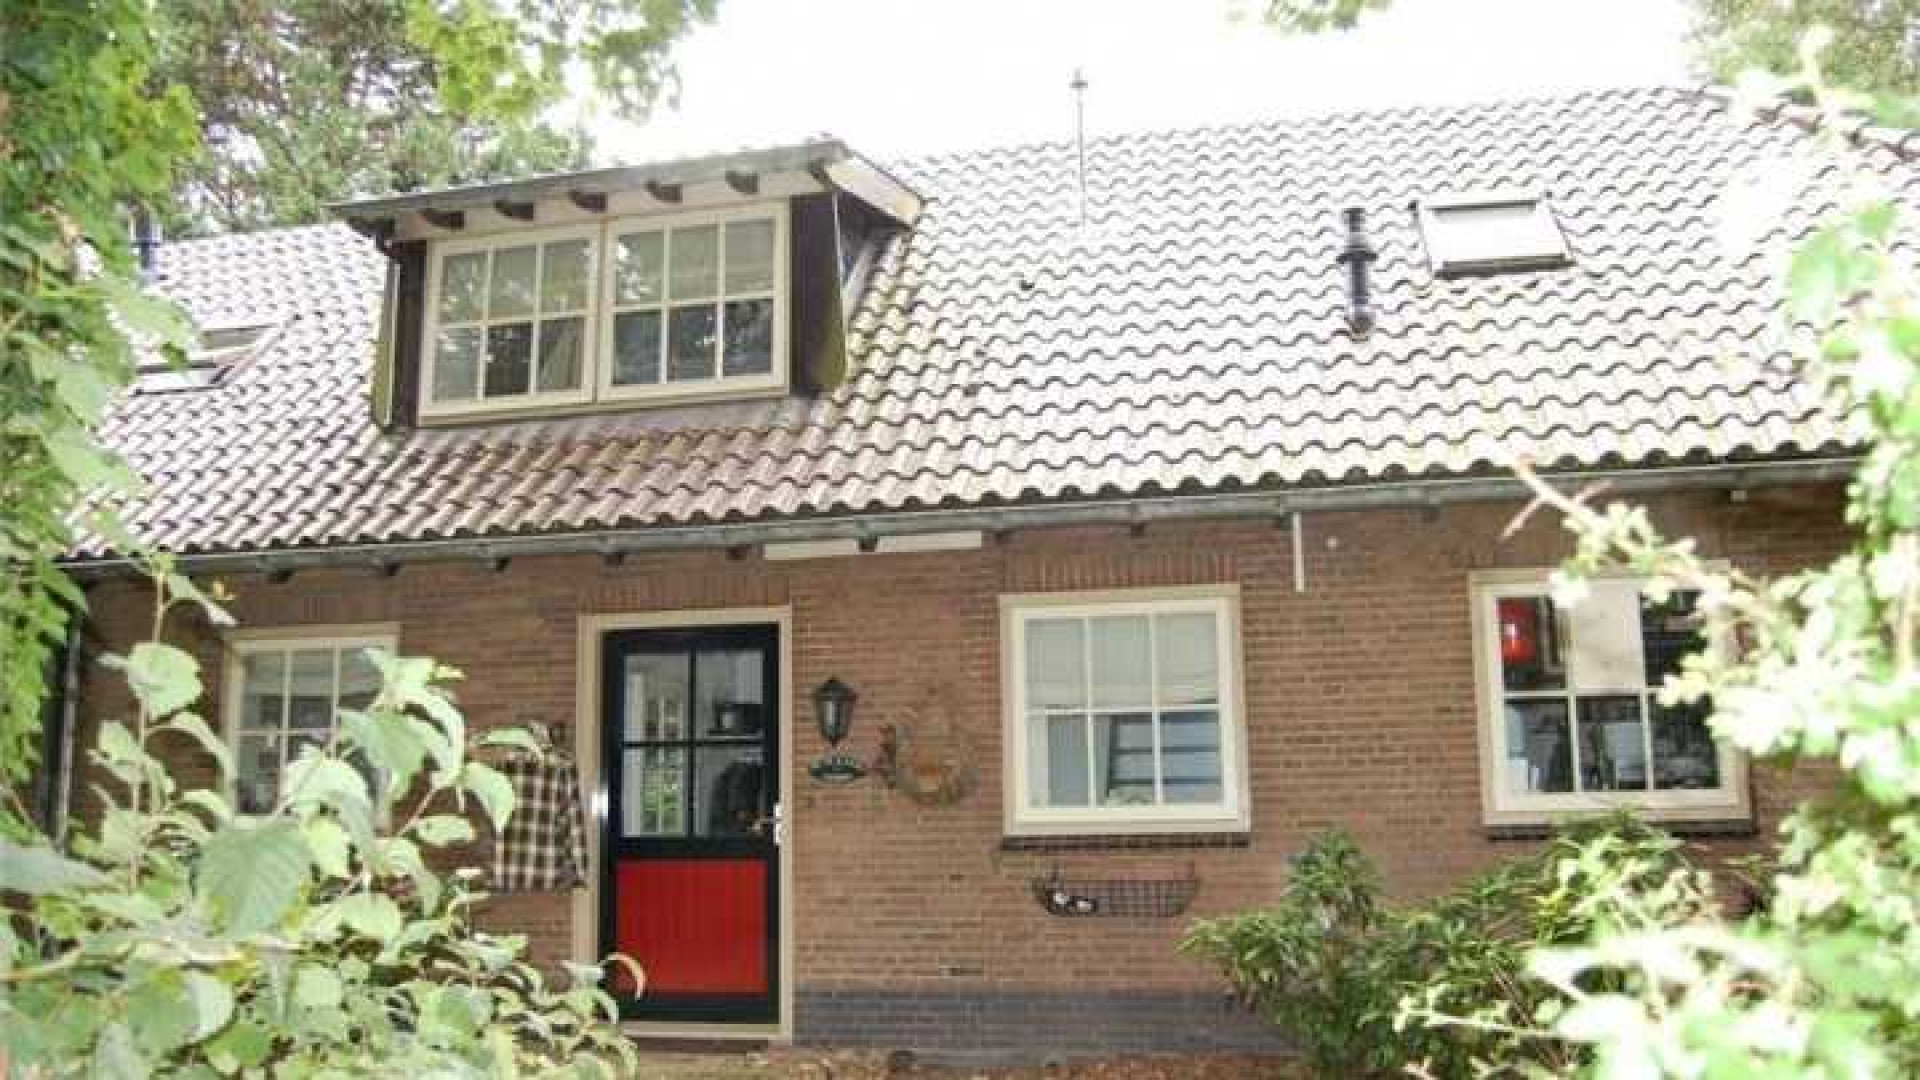 Surprise! Henny Huisman haalt na 2 jaar villa uit de verkoop. Zie foto's